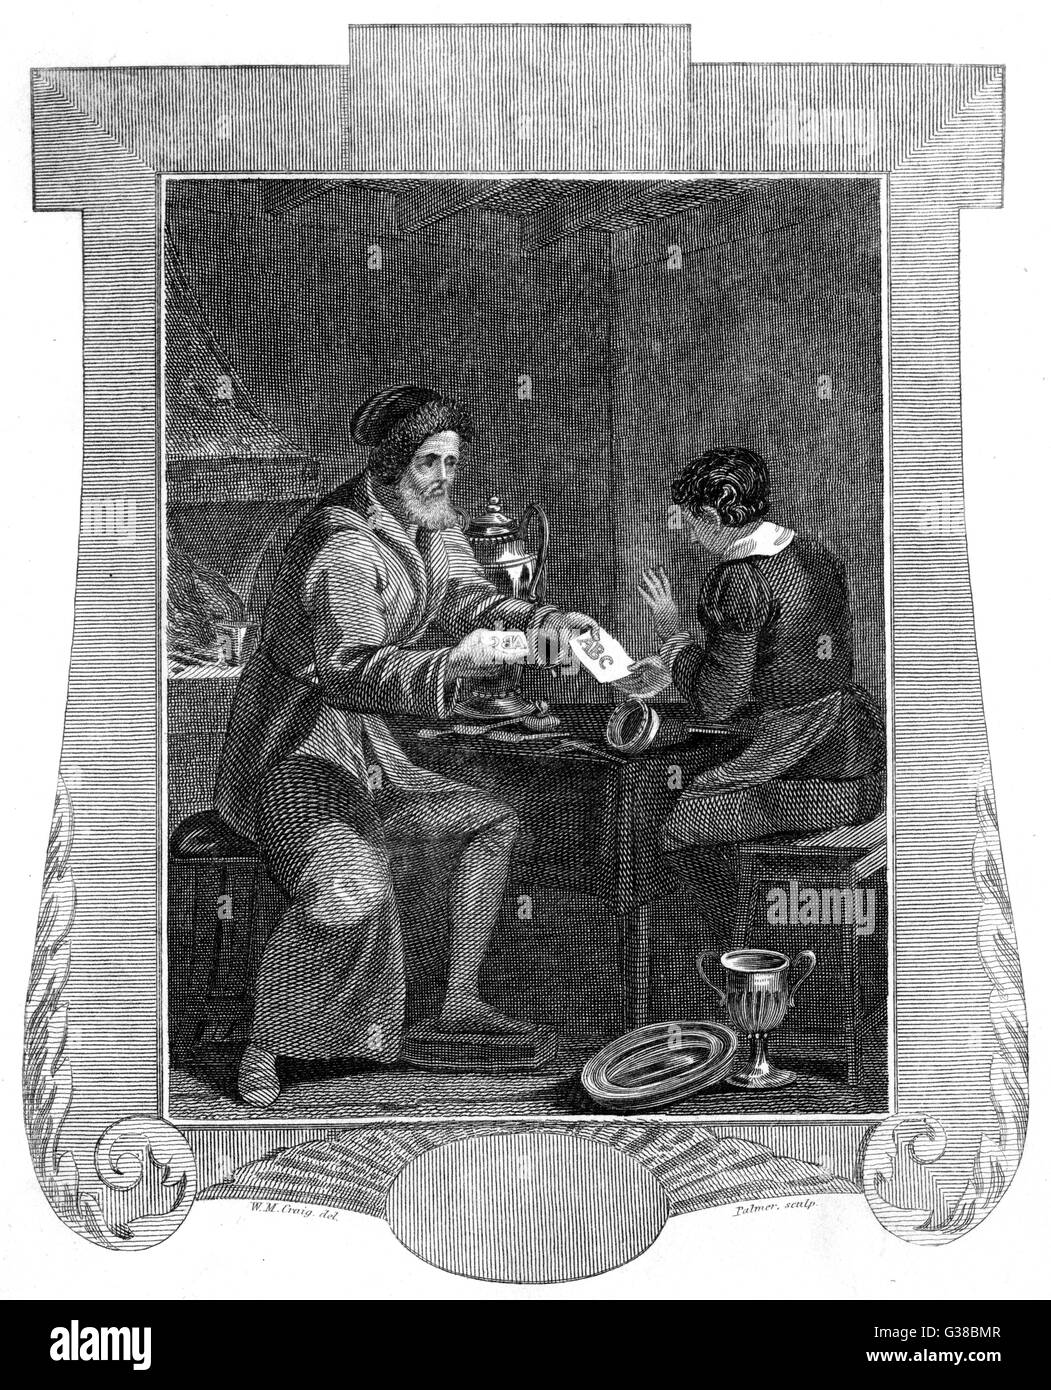 Le philosophe allemand Johann Faustus occulte était parfois crédité d'avoir inventé l'impression : ici il montre son épouse les lettres ABC imprimé à partir d'un bloc en bois Date : vers 1530 Banque D'Images